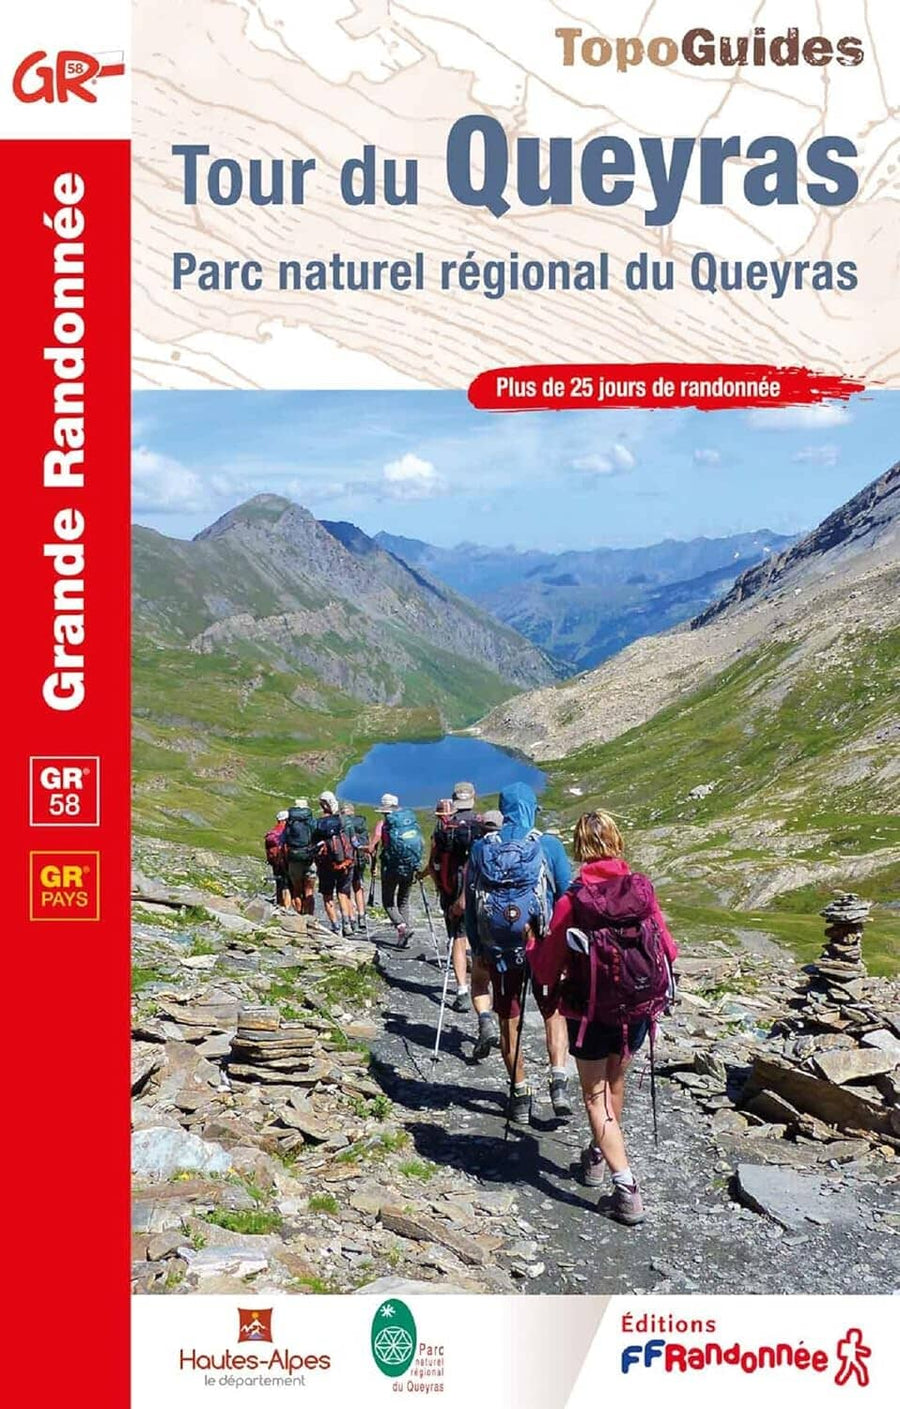 Topoguide de randonnée - Tour du Queyras - GR58 | FFR guide de randonnée FFR - Fédération Française de Randonnée 